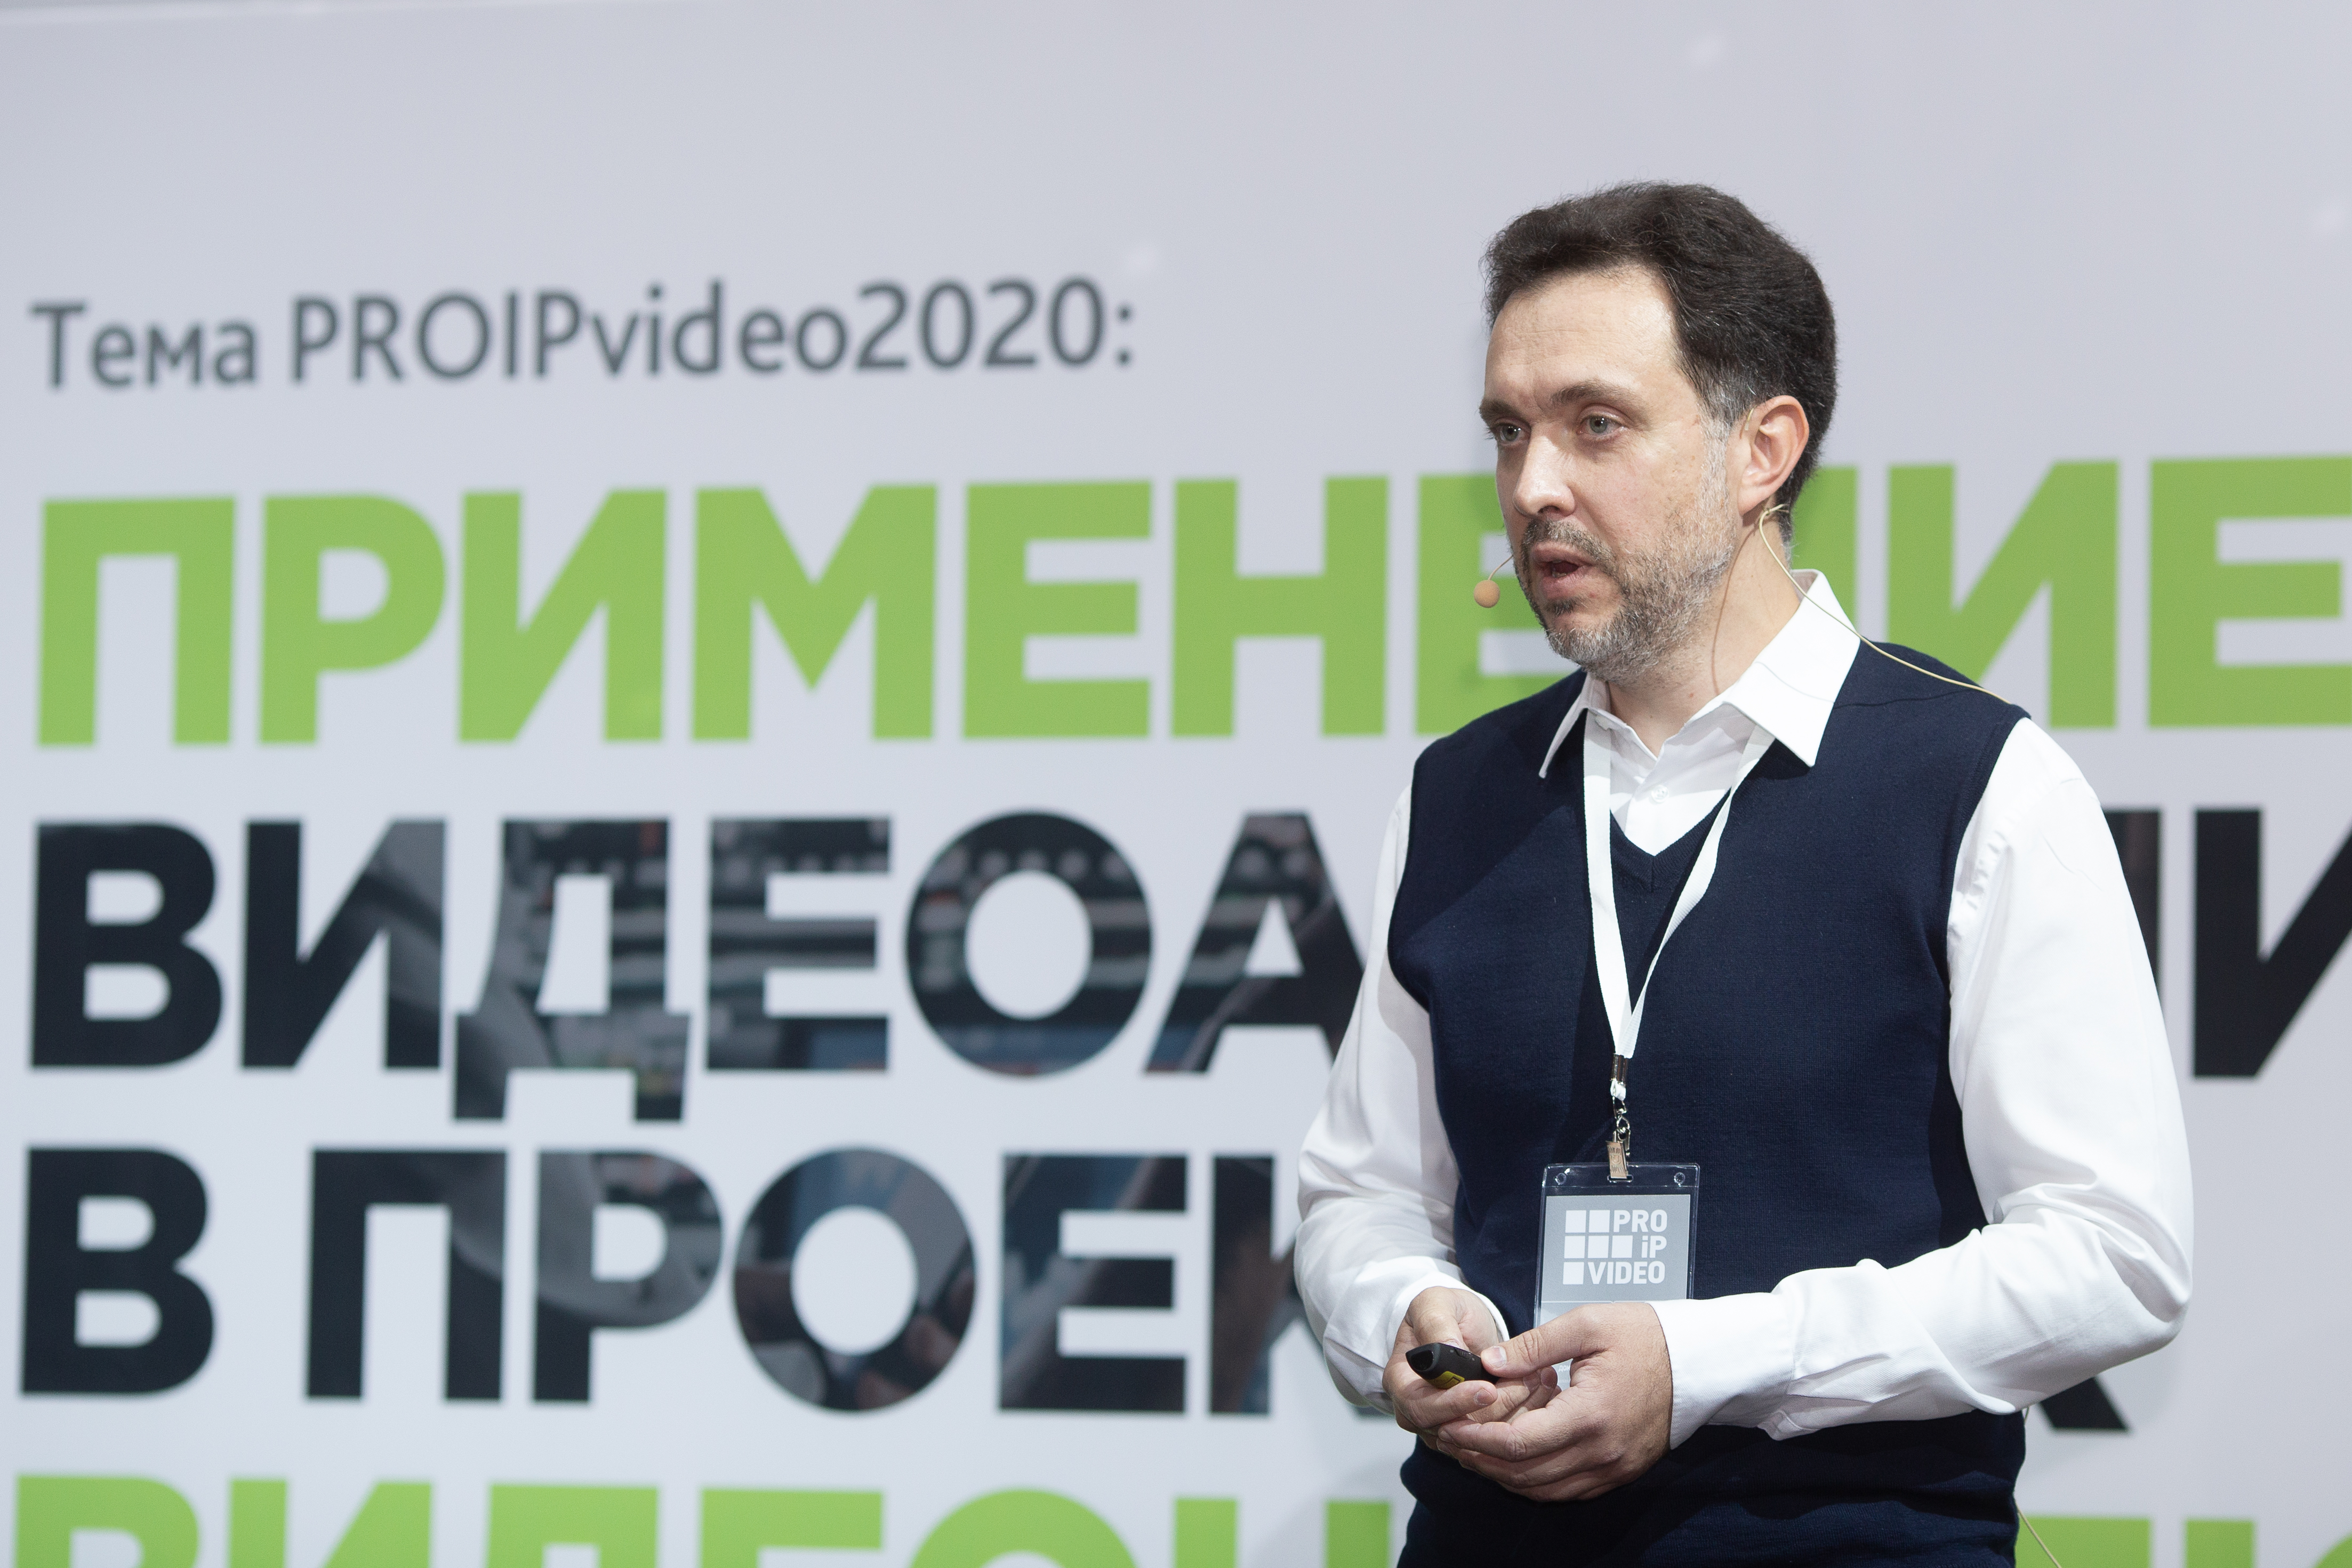 Конференция PROIPvideo 2020